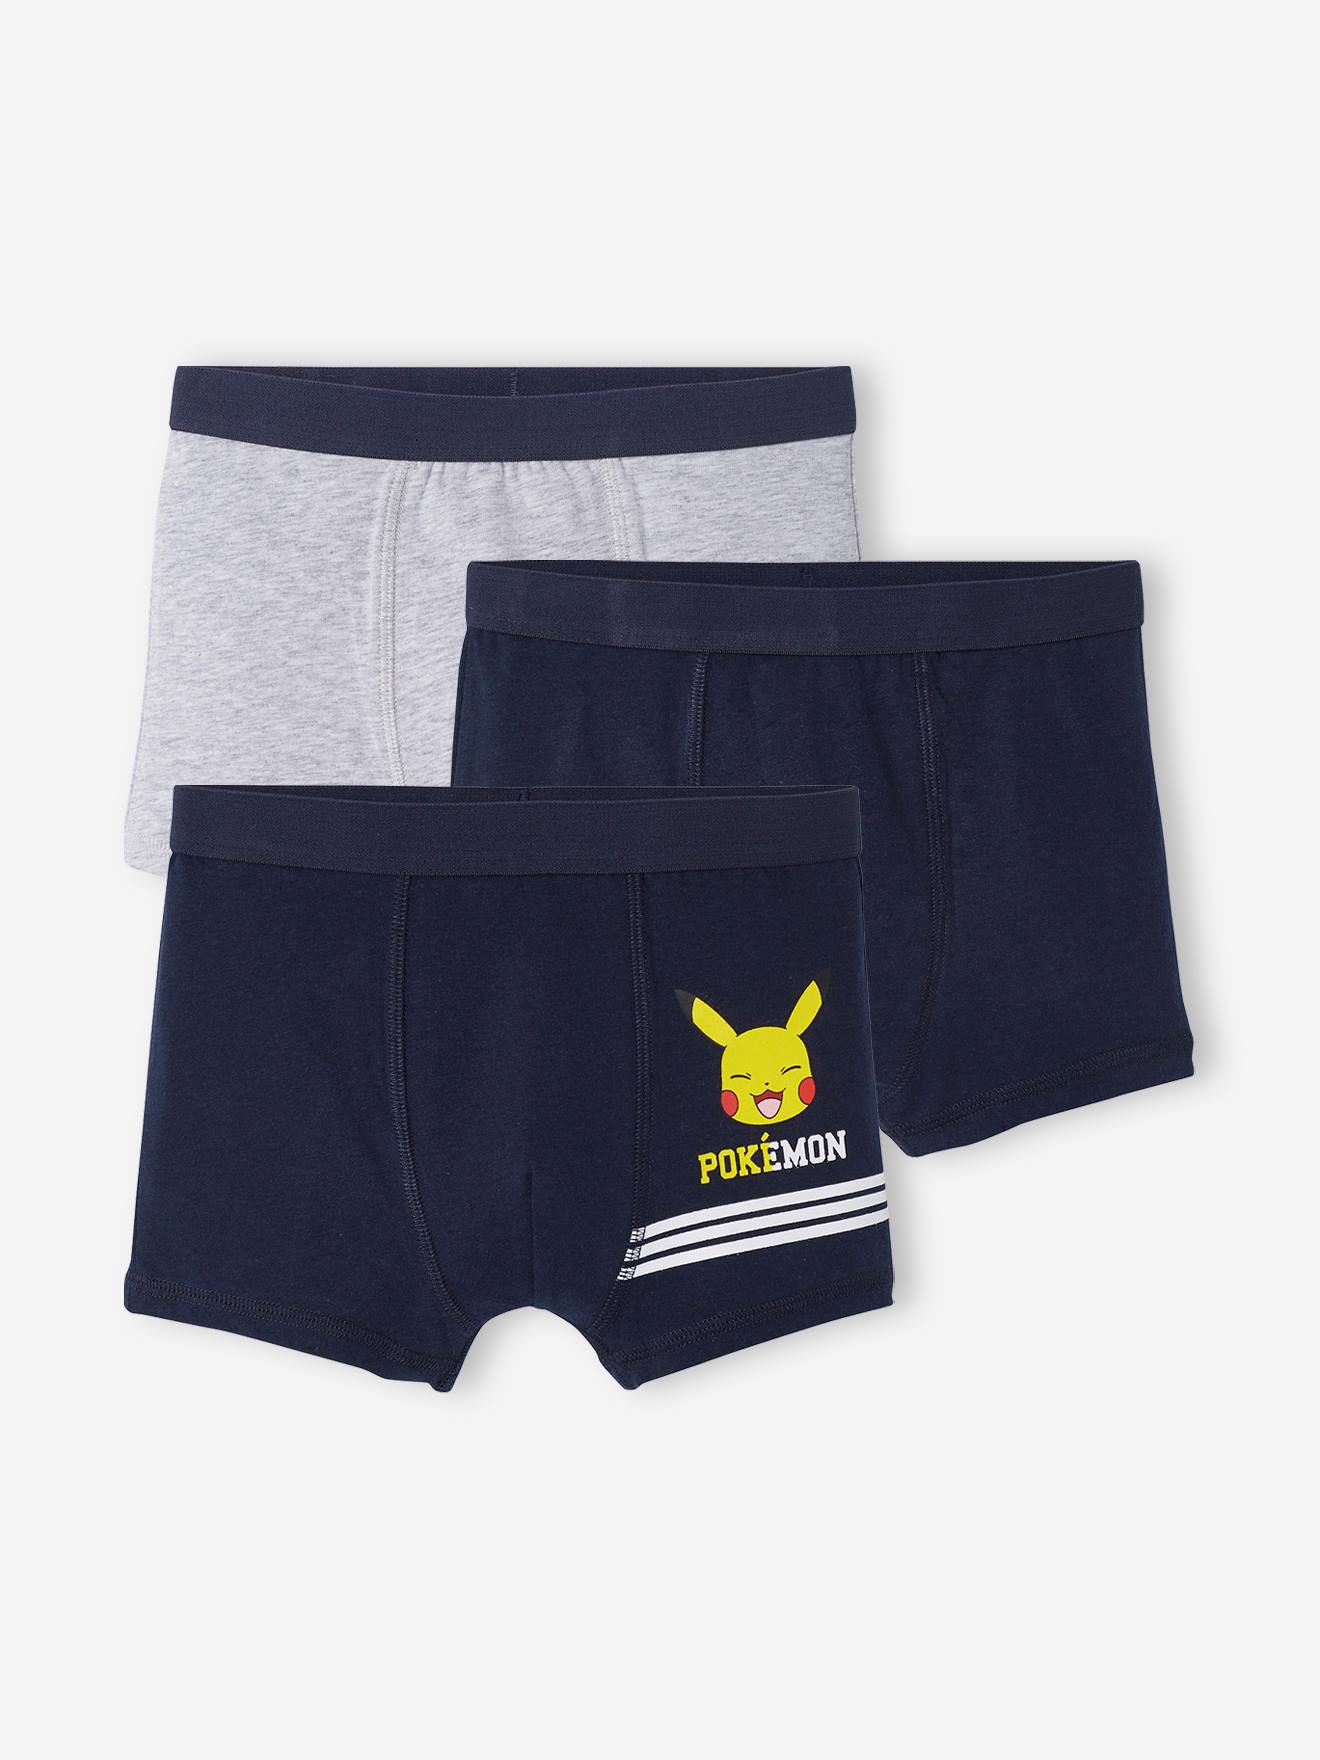 naaimachine overspringen Ga op pad Set van 3 Pokémon® boxers - marineblauw, grijs gechineerd, Jongens